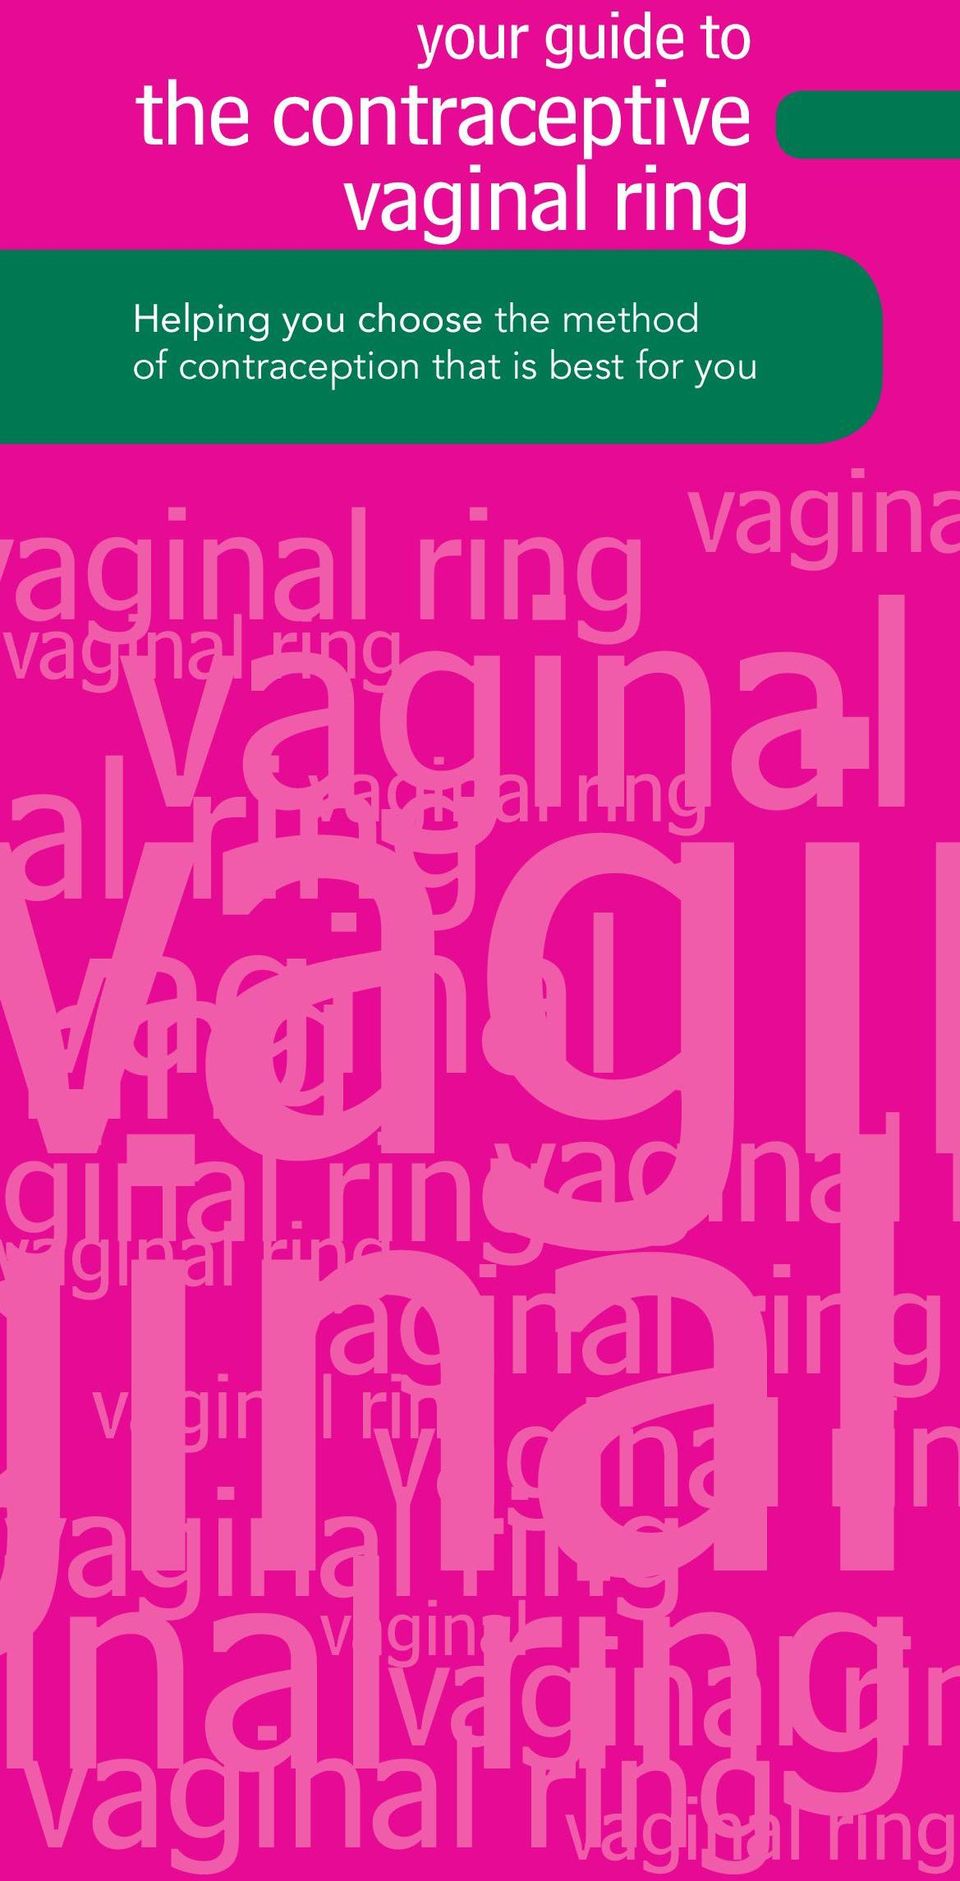 vaginal ring vaginal rin vaginal aginal ring vaginal ring al ring vaginal ring